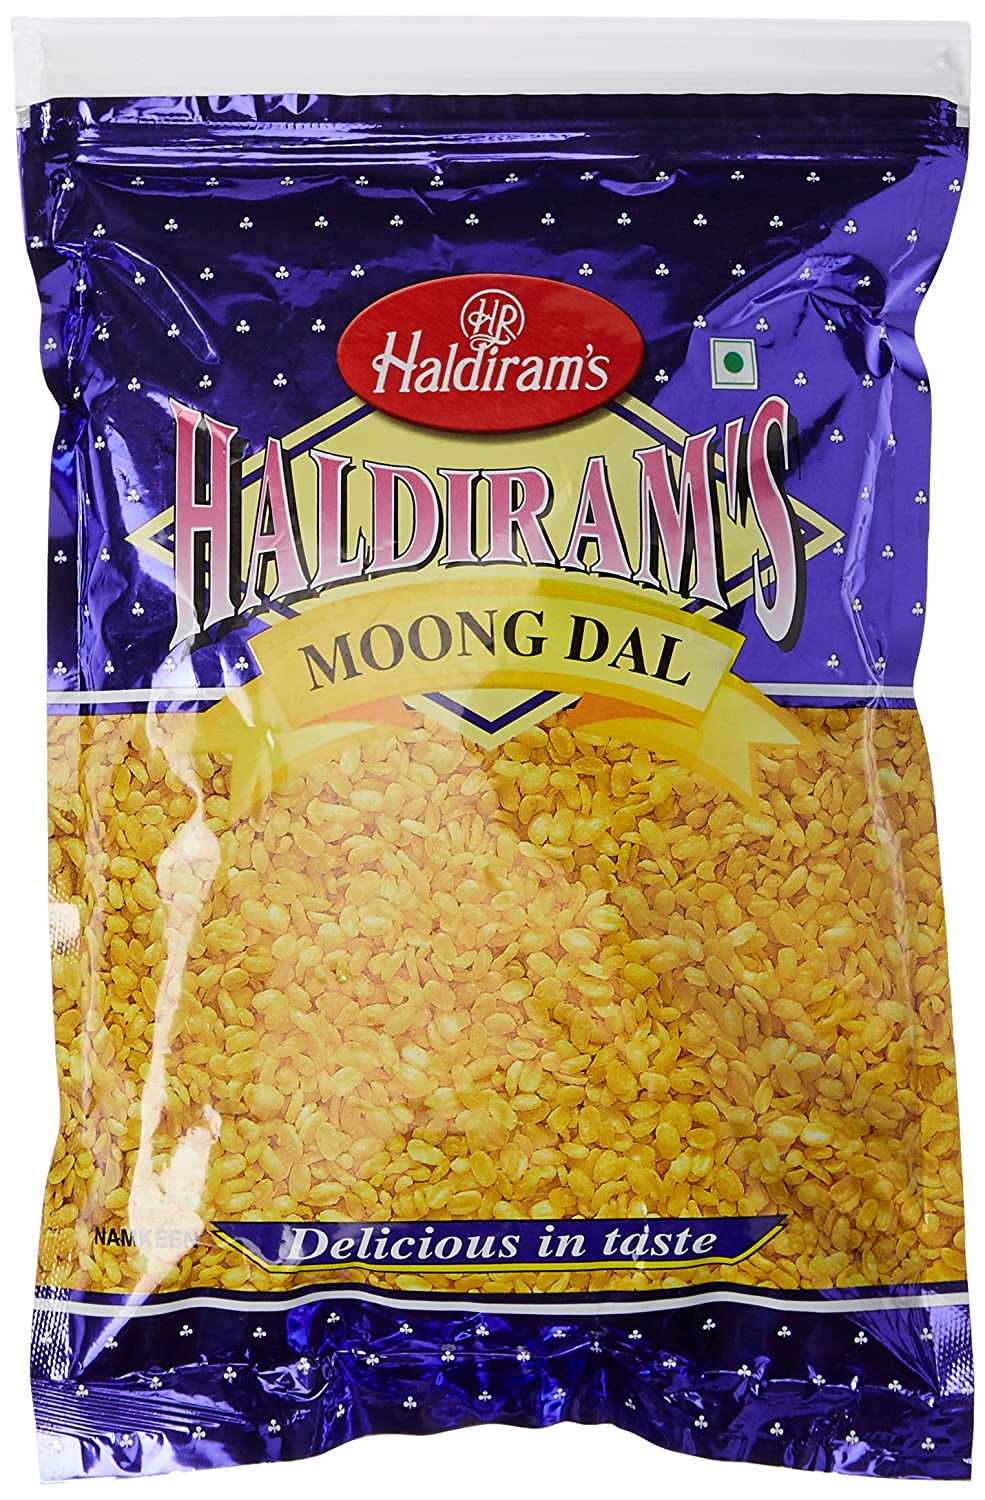 Haldiram's Moong Dal 400g ขนมขบเคี้ยวอินเดีย